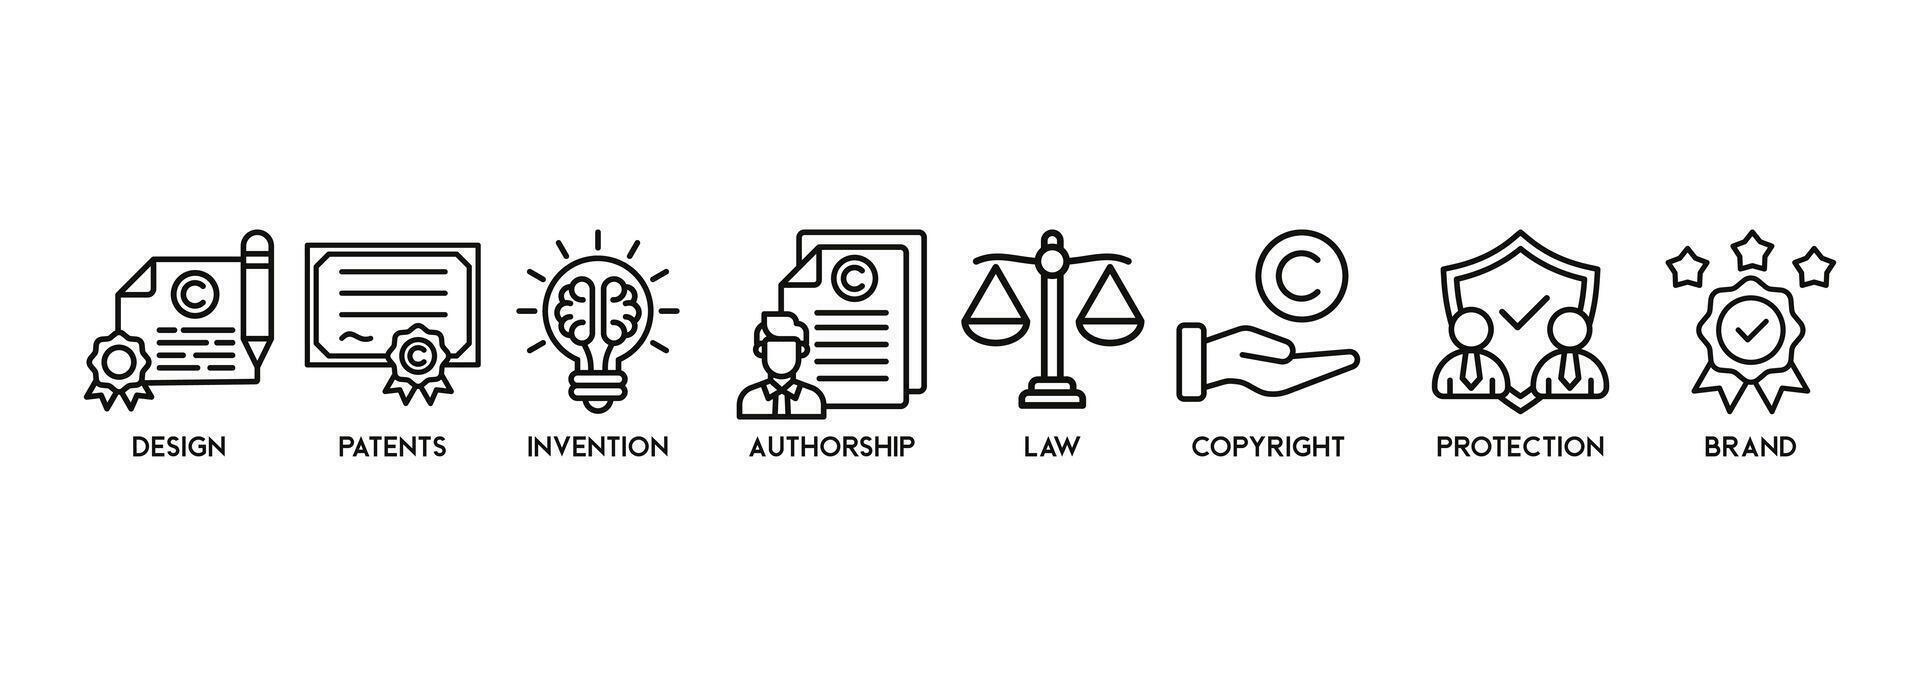 intellettuale proprietà bandiera ragnatela icona vettore illustrazione concetto per marchio con icona di disegno, brevetti, invenzione, paternità, legge, diritto d'autore, protezione, e marca